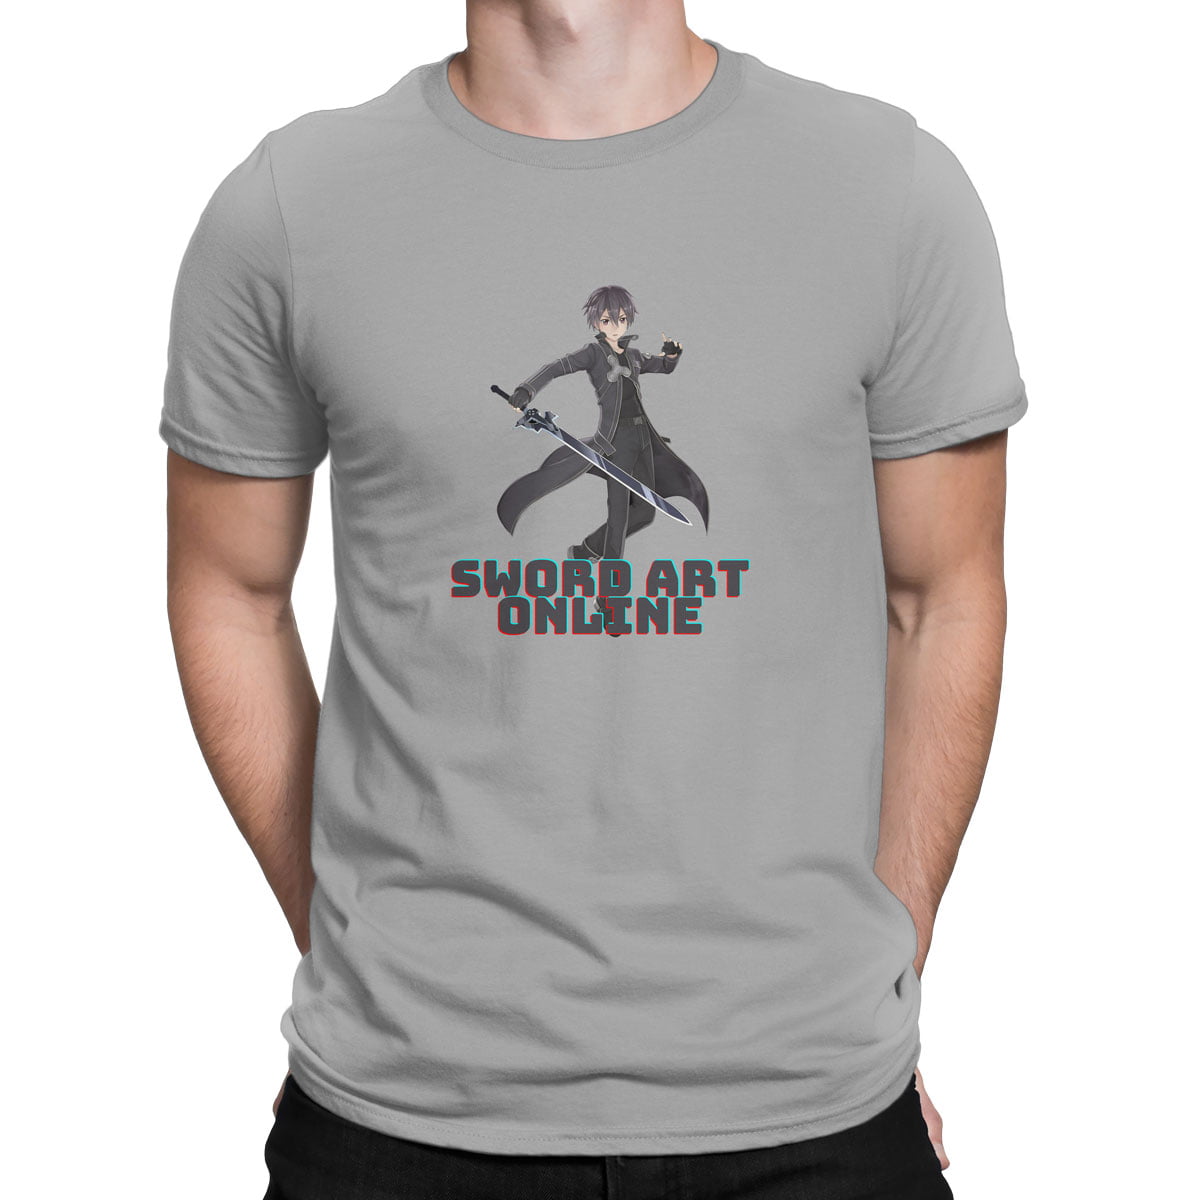 Sword art online kirito erkek tisort g - sword art online - kirito baskılı erkek t-shirt - figurex